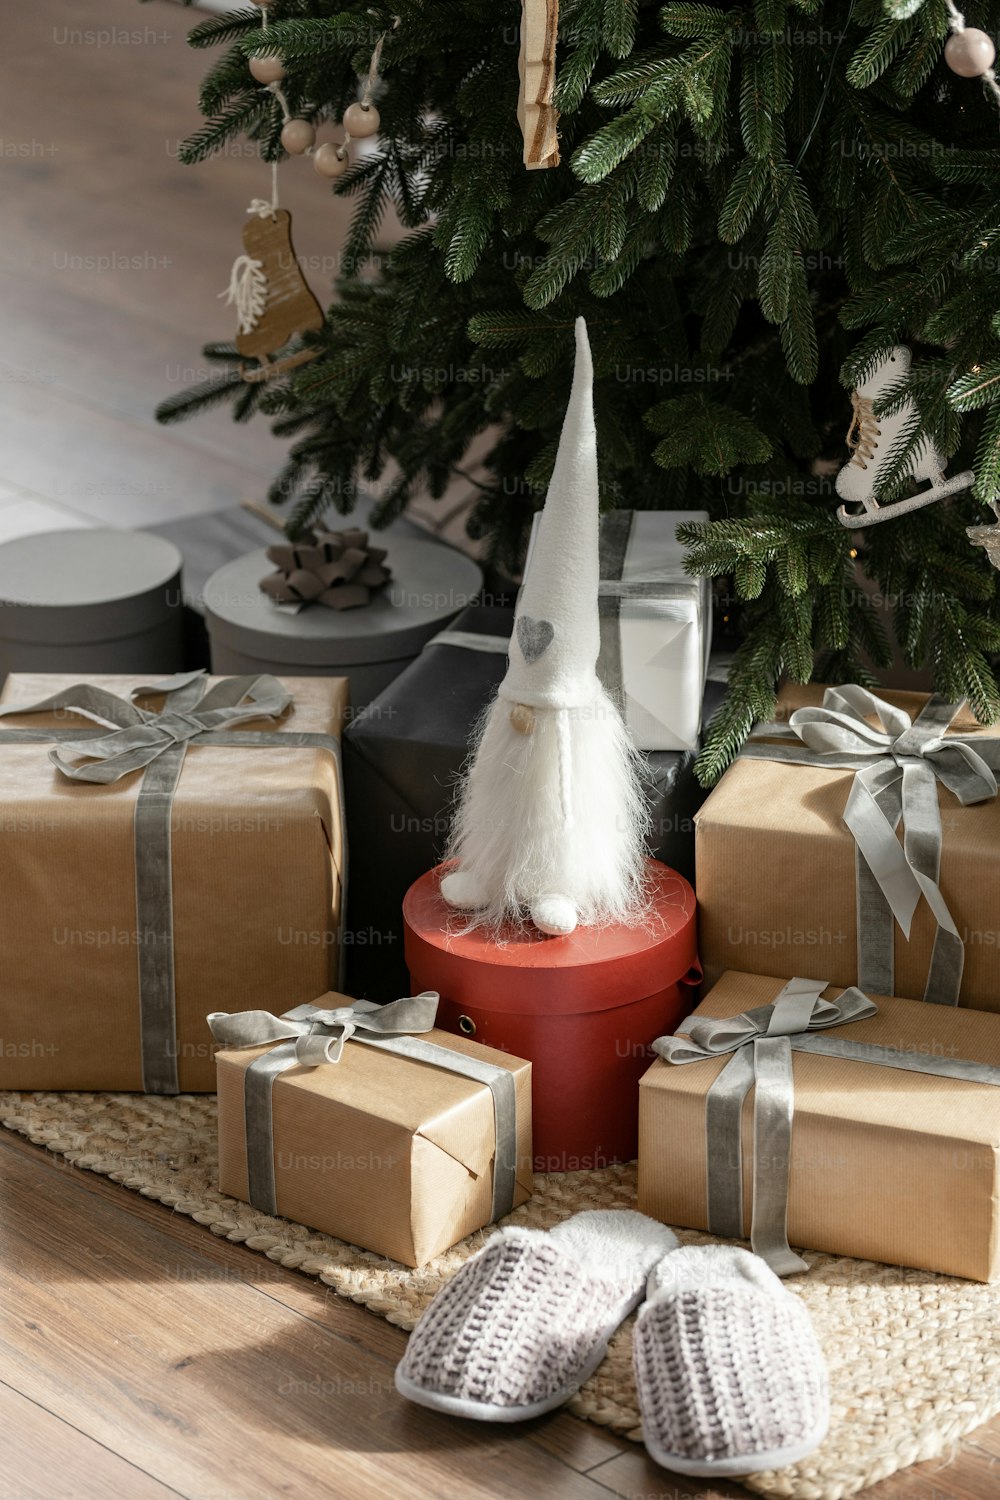 Vista vertical de muchos regalos de año nuevo, regalos y juguetes debajo del árbol de Navidad con decoración de invierno. Concepto de celebración noel